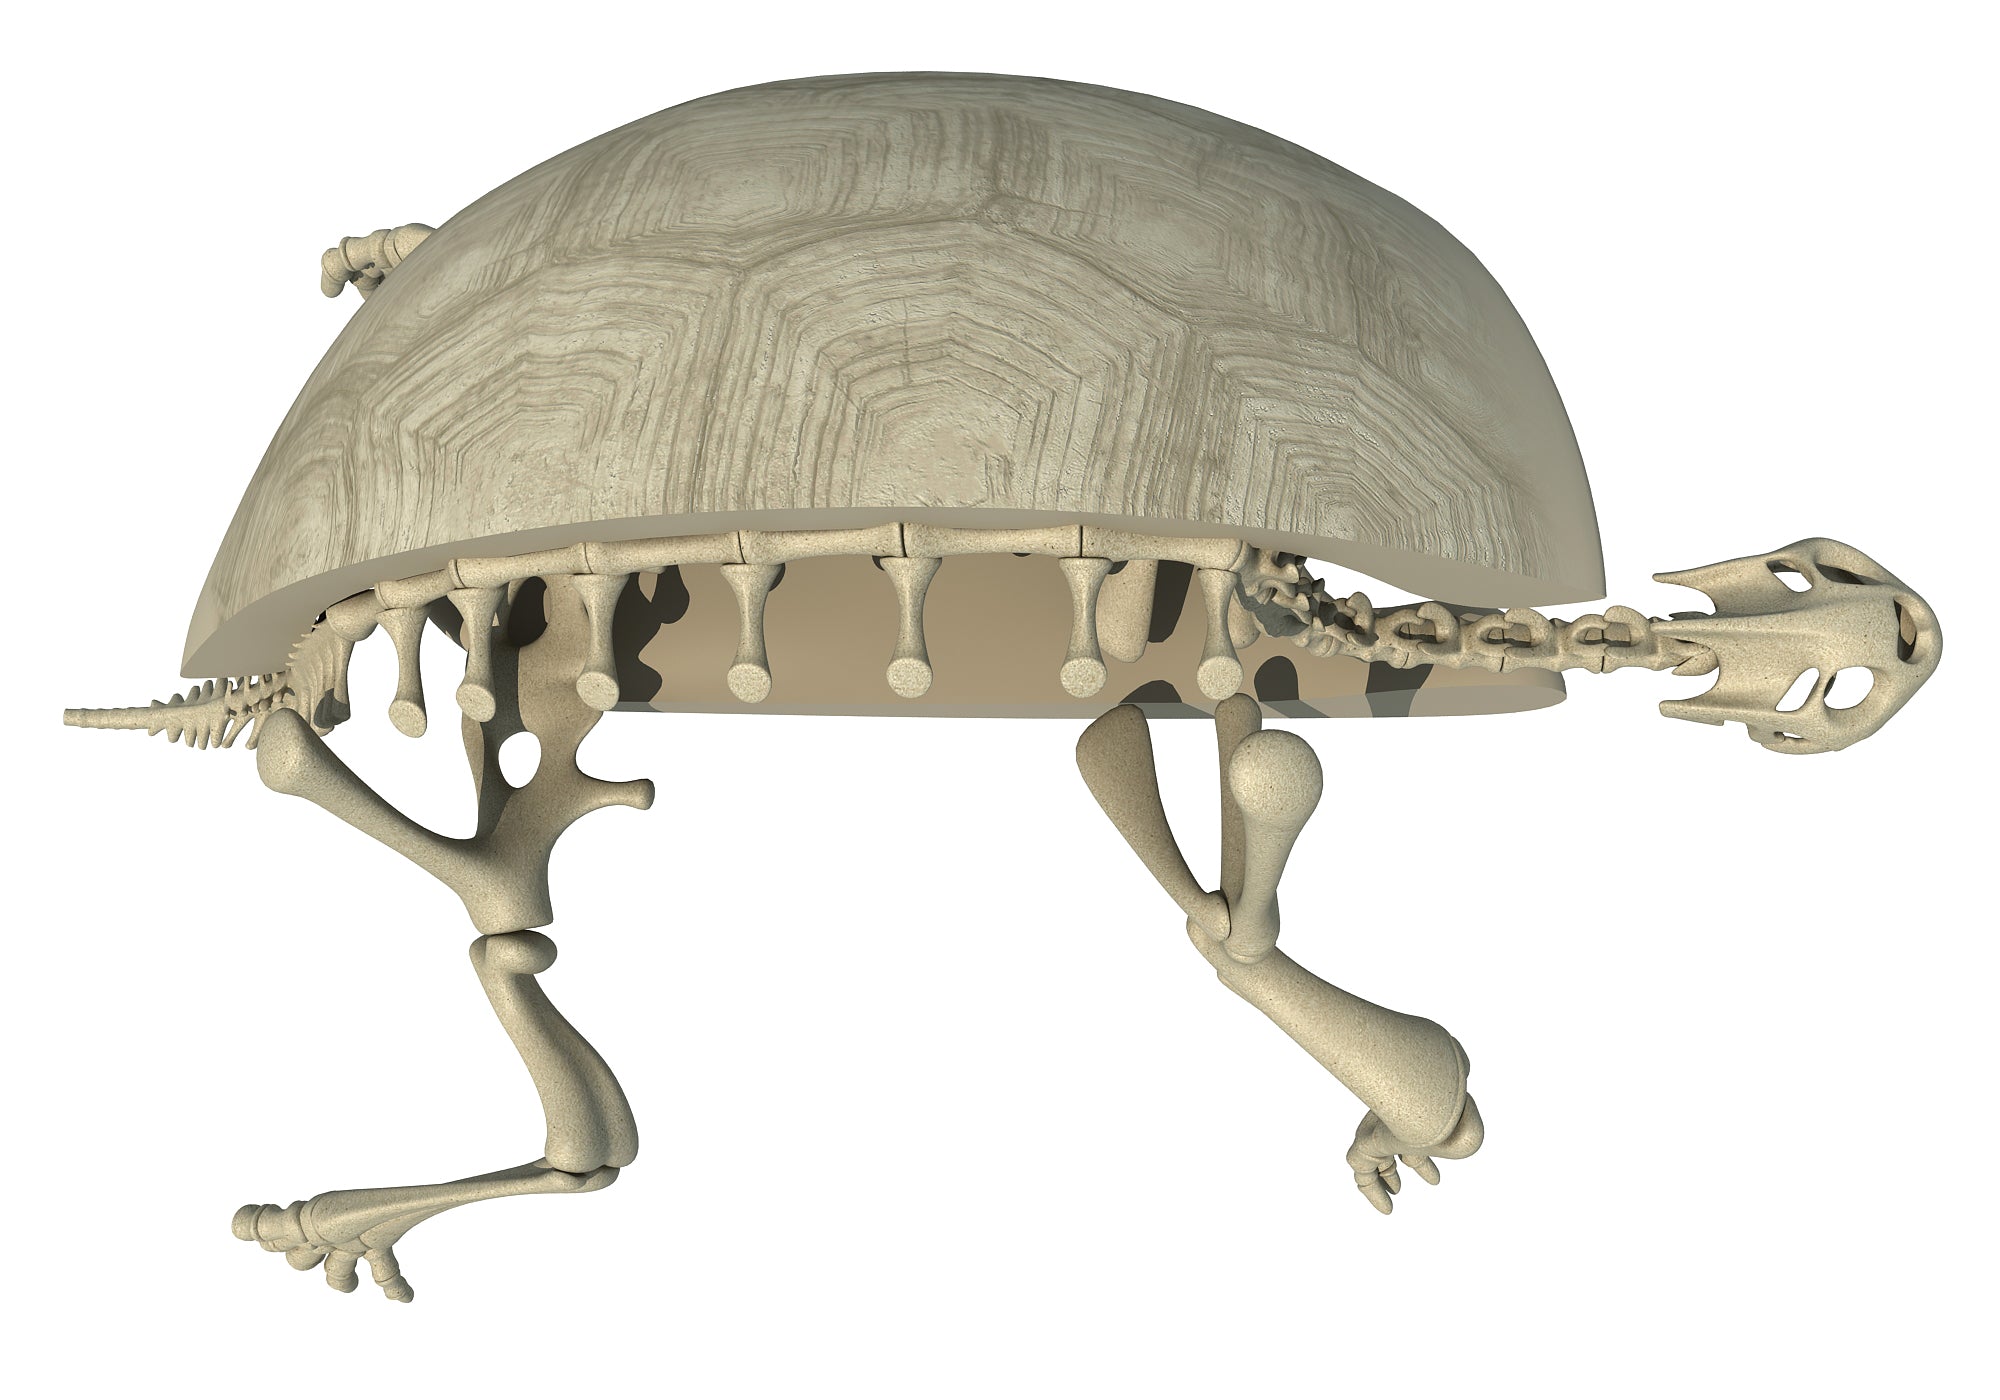 Tortoise Skeleton 3D Model